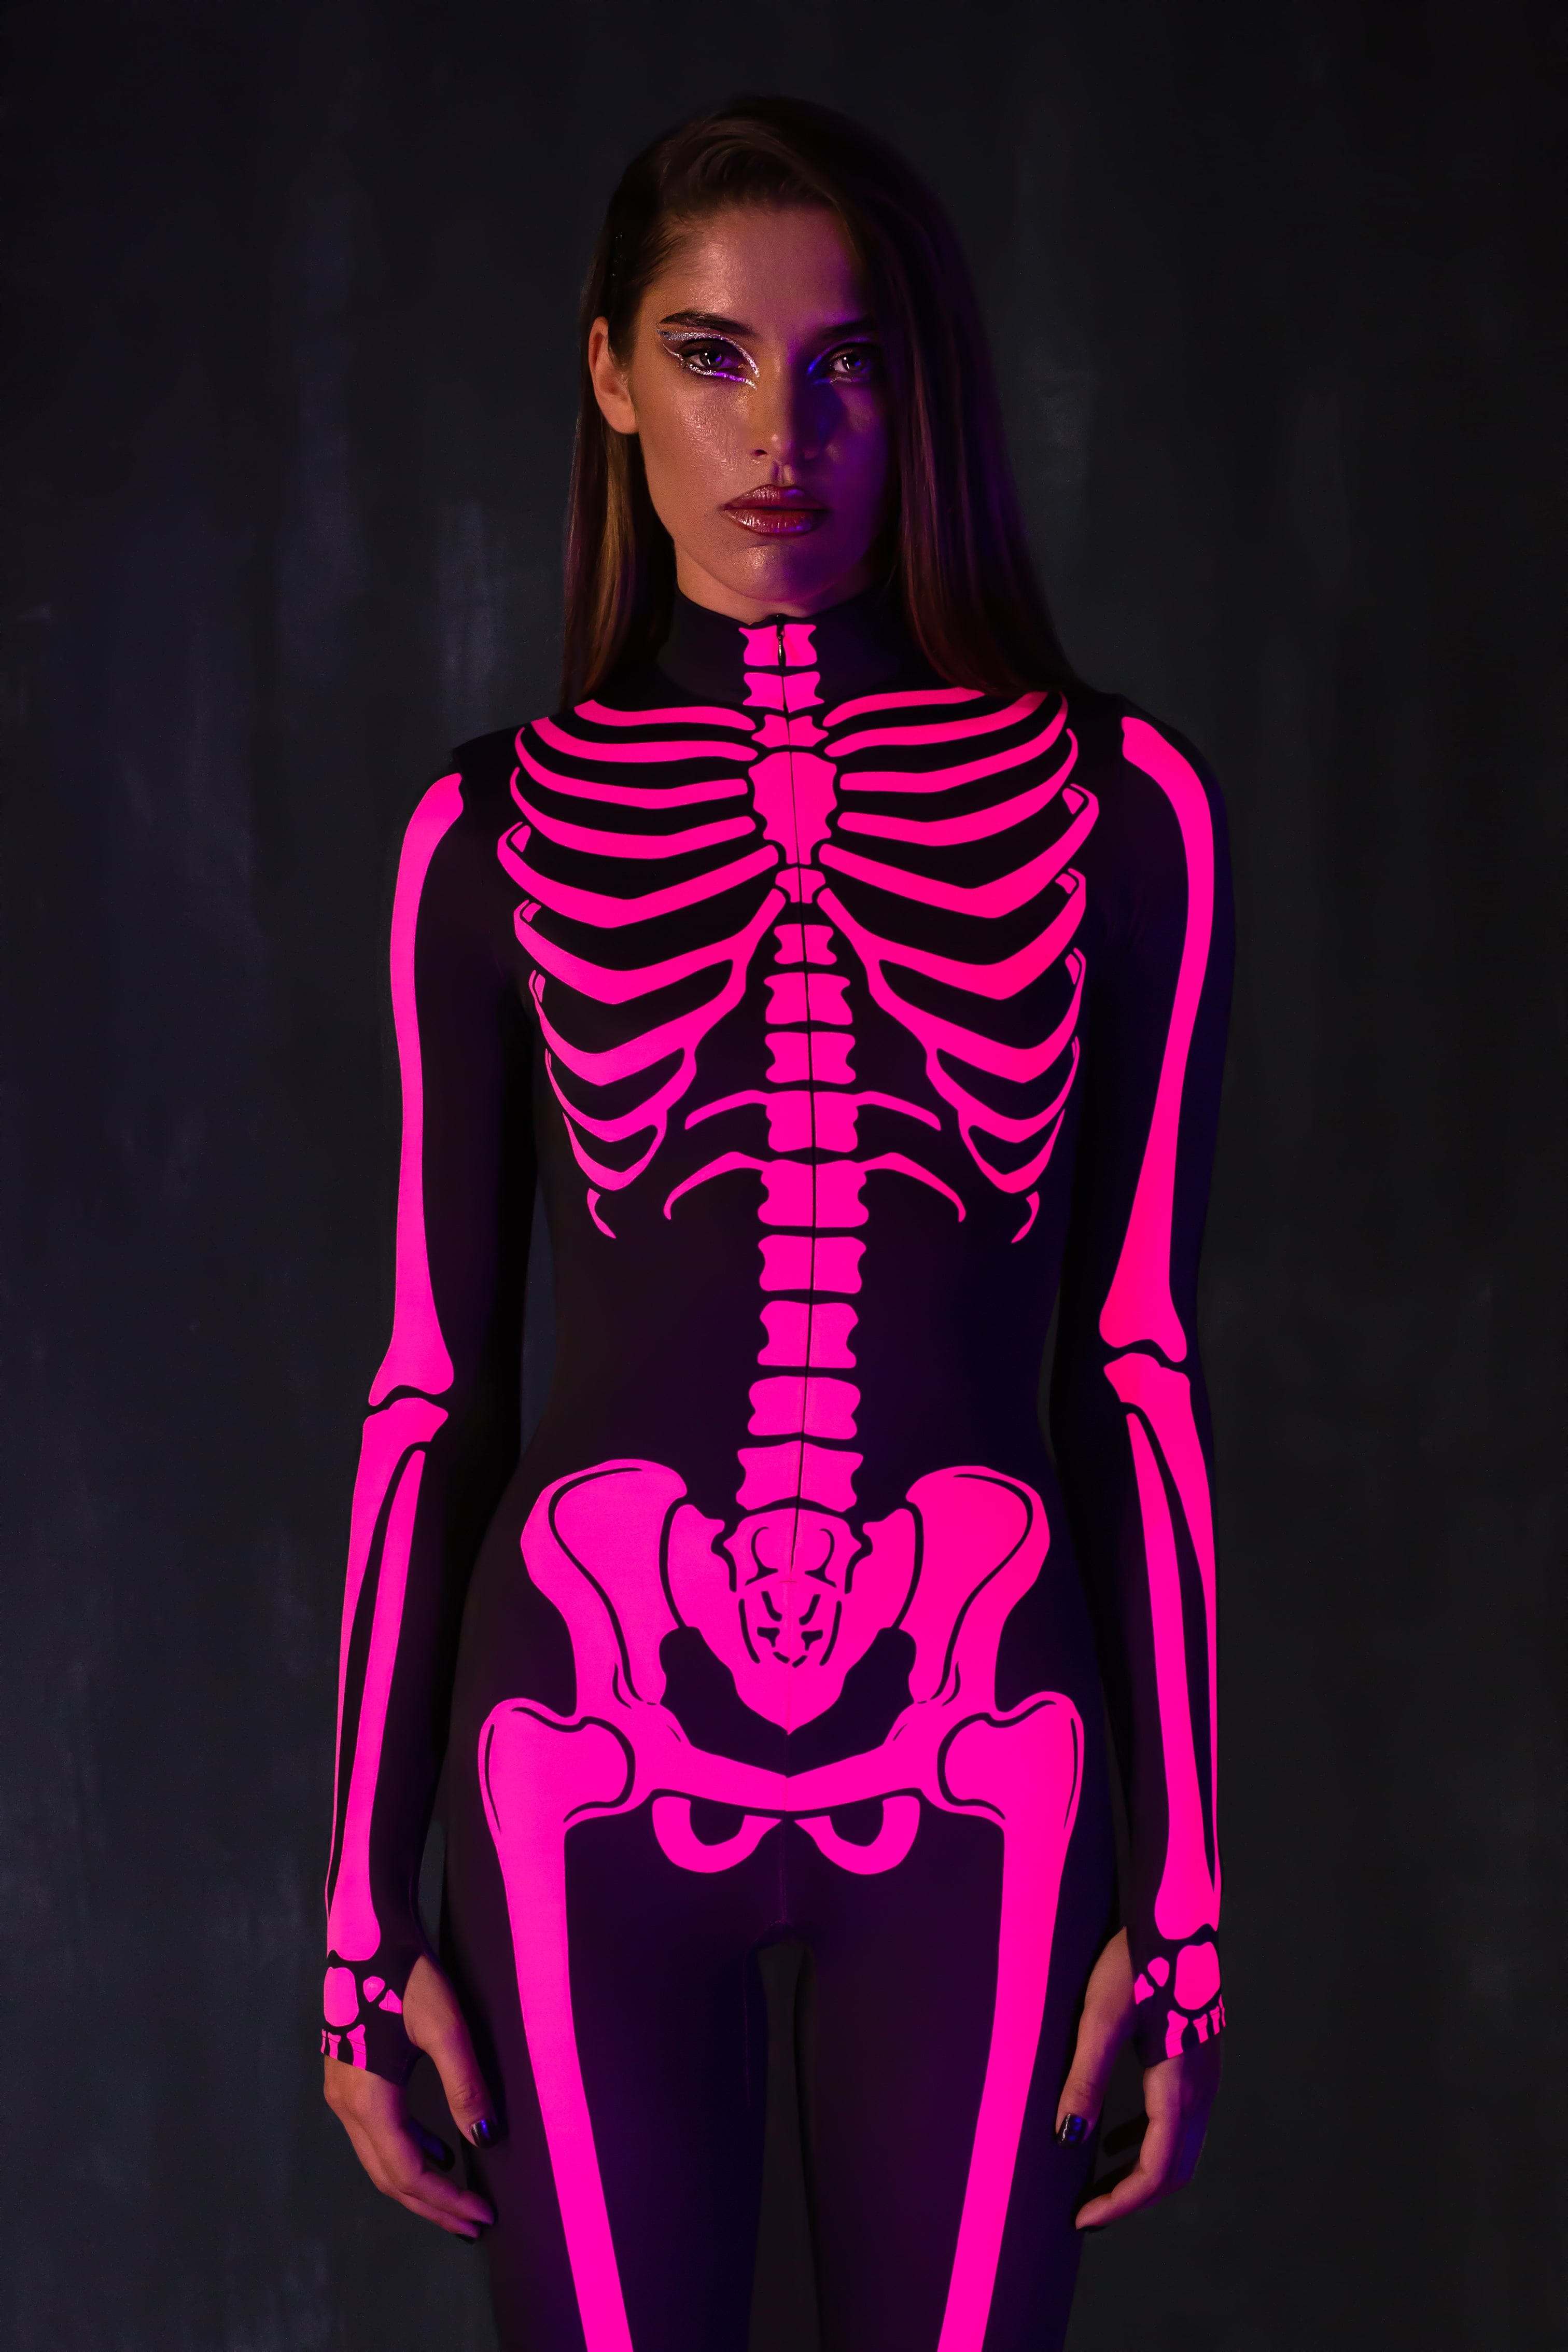 Raspberry Neon Skeleton Costume